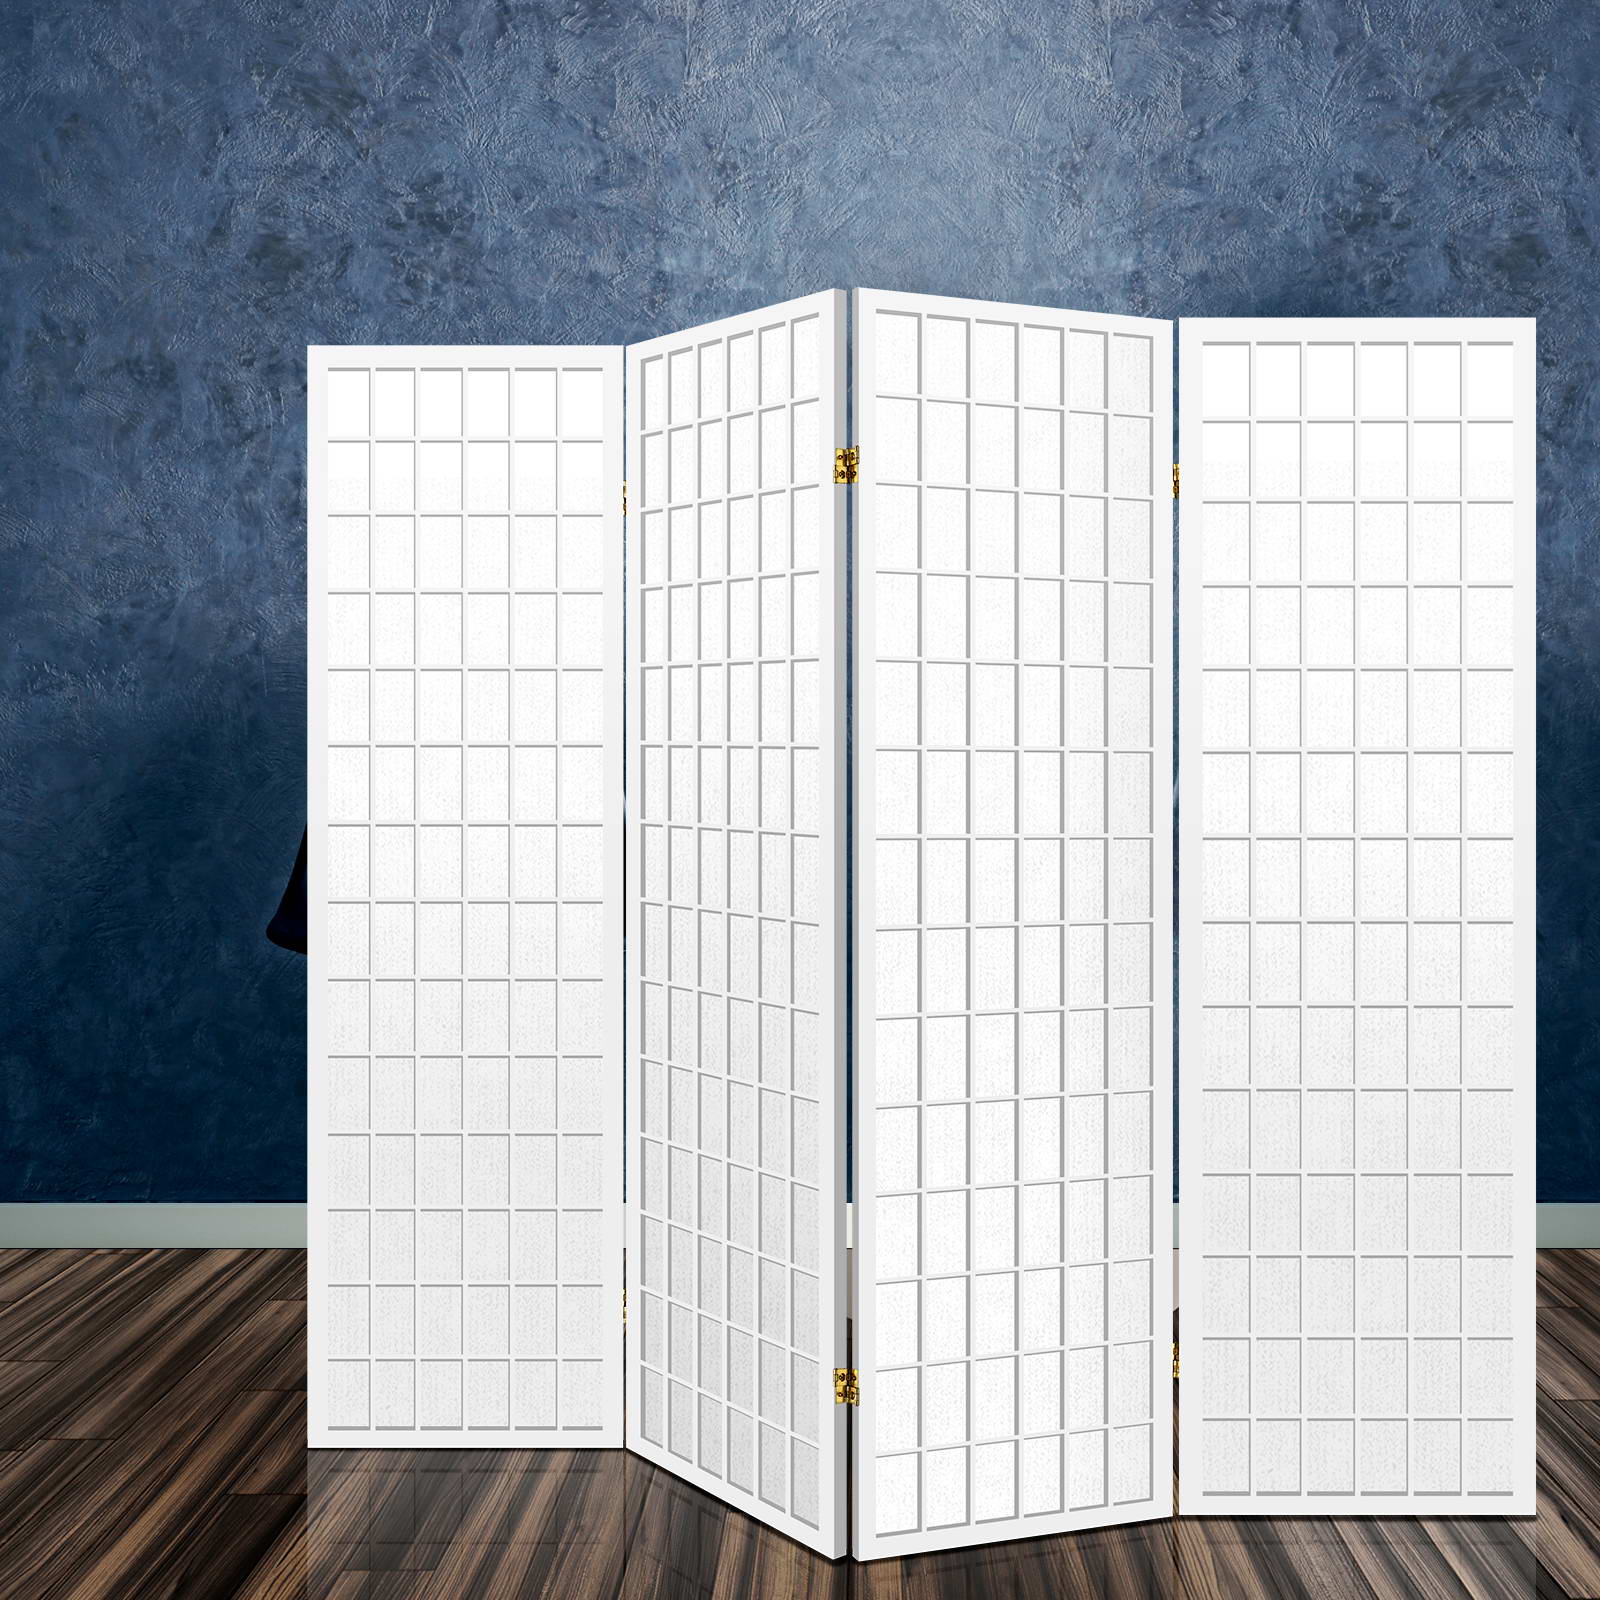 Artiss 4 Panel Pine Wood Room Divider - White - Notbrand